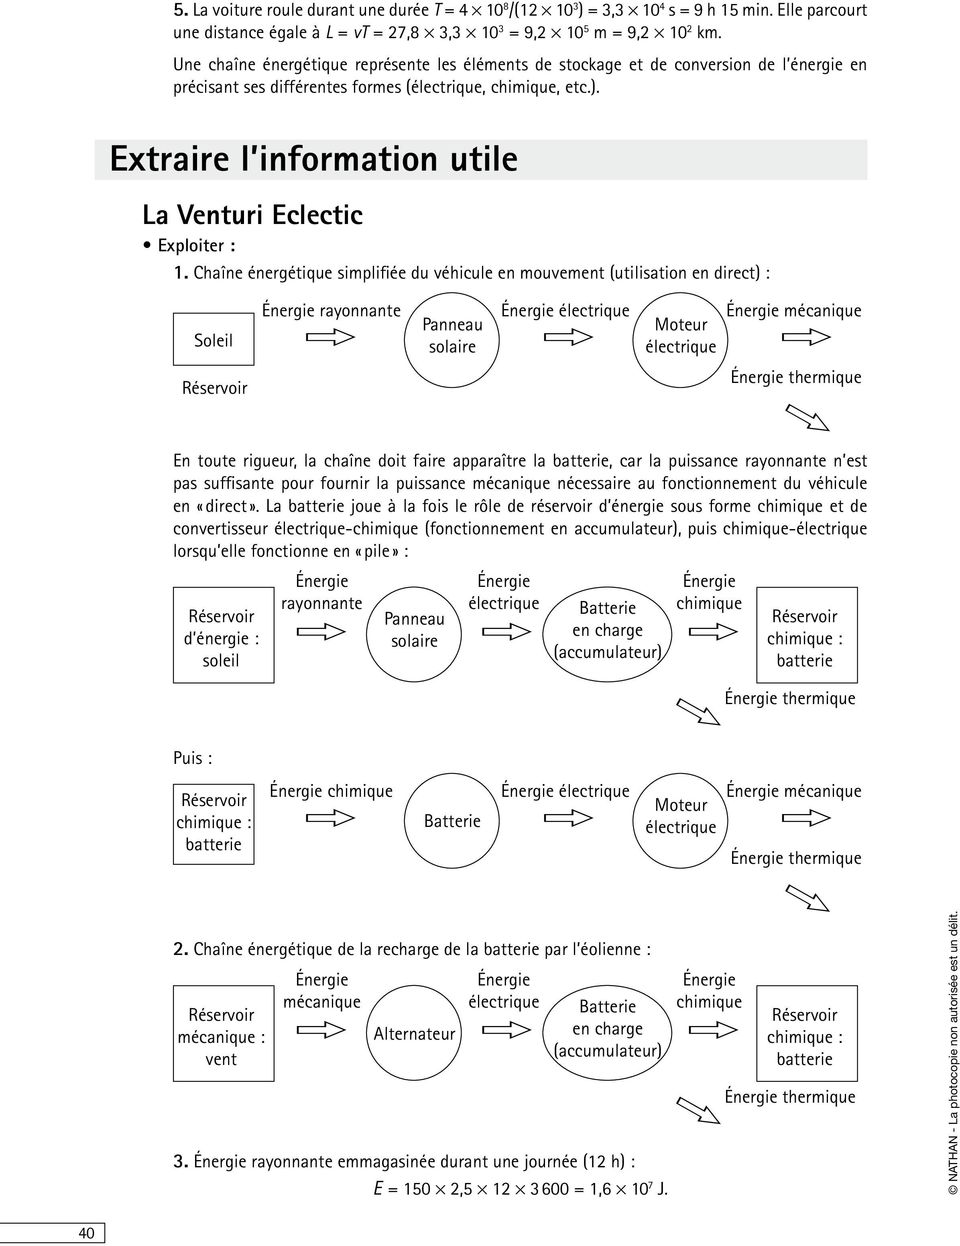 Extaie l infomation utile La Ventui Eclectic Exploite : 1.